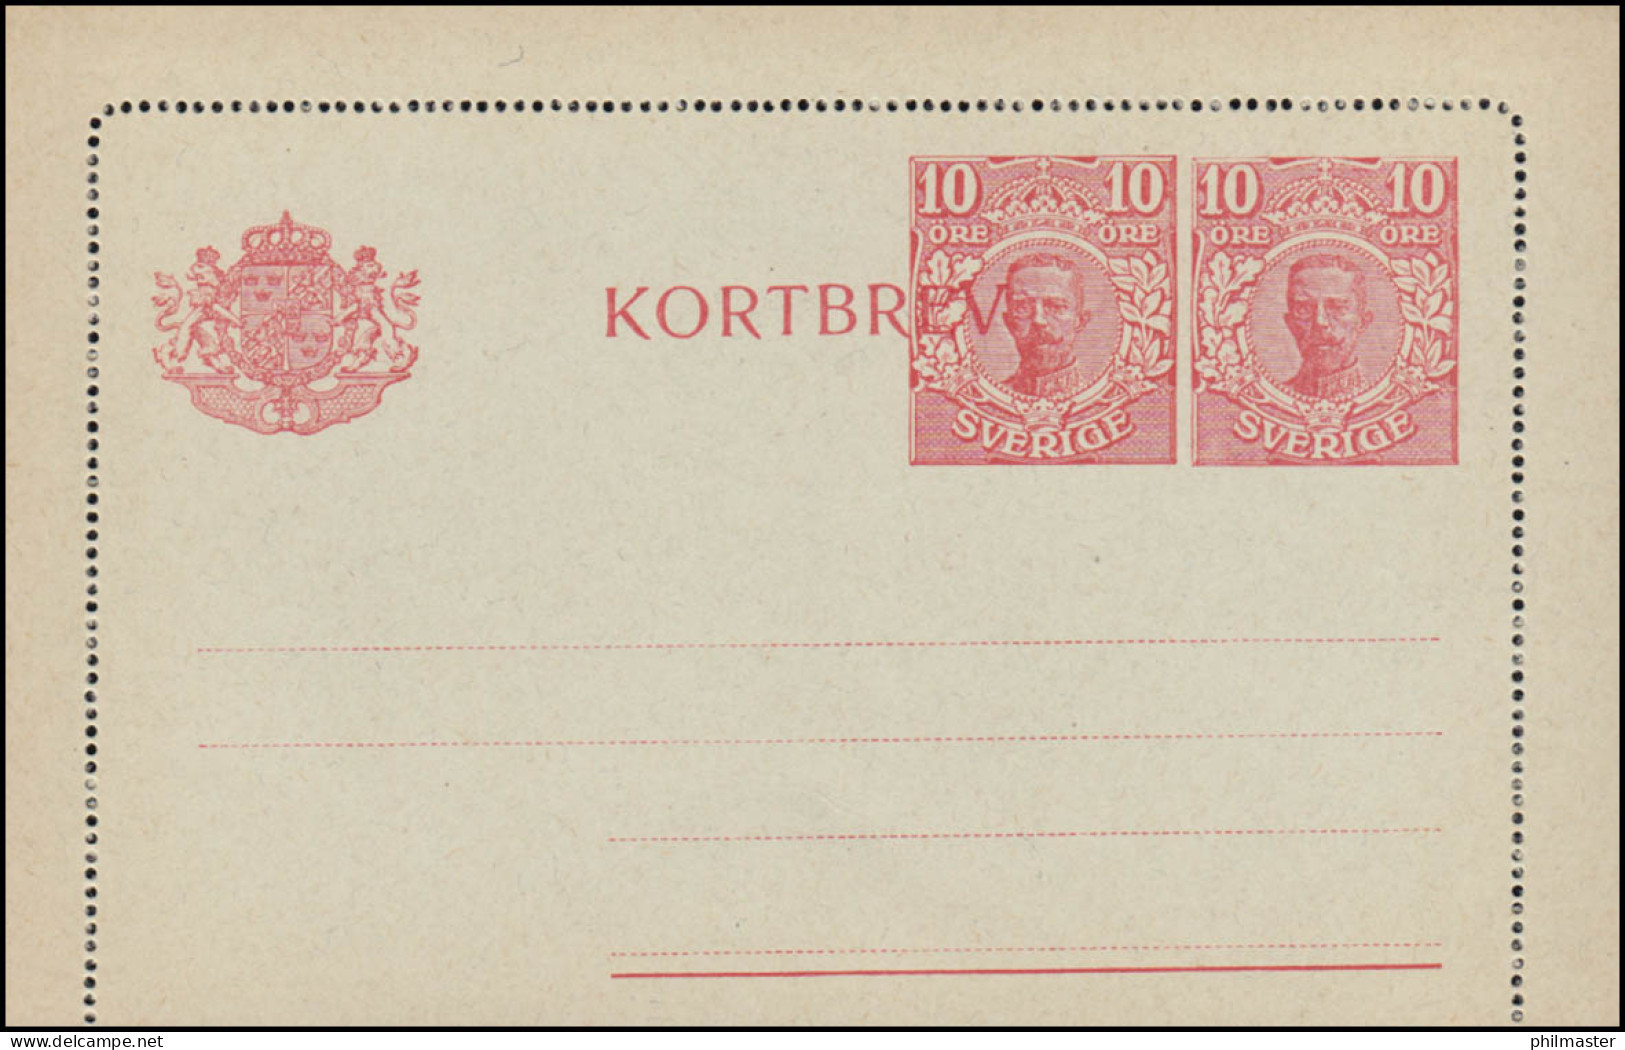 Schweden Kartenbrief K 21 KORTBREV König Gustav 10 Neben 10 Öre, ** Postfrisch - Postal Stationery